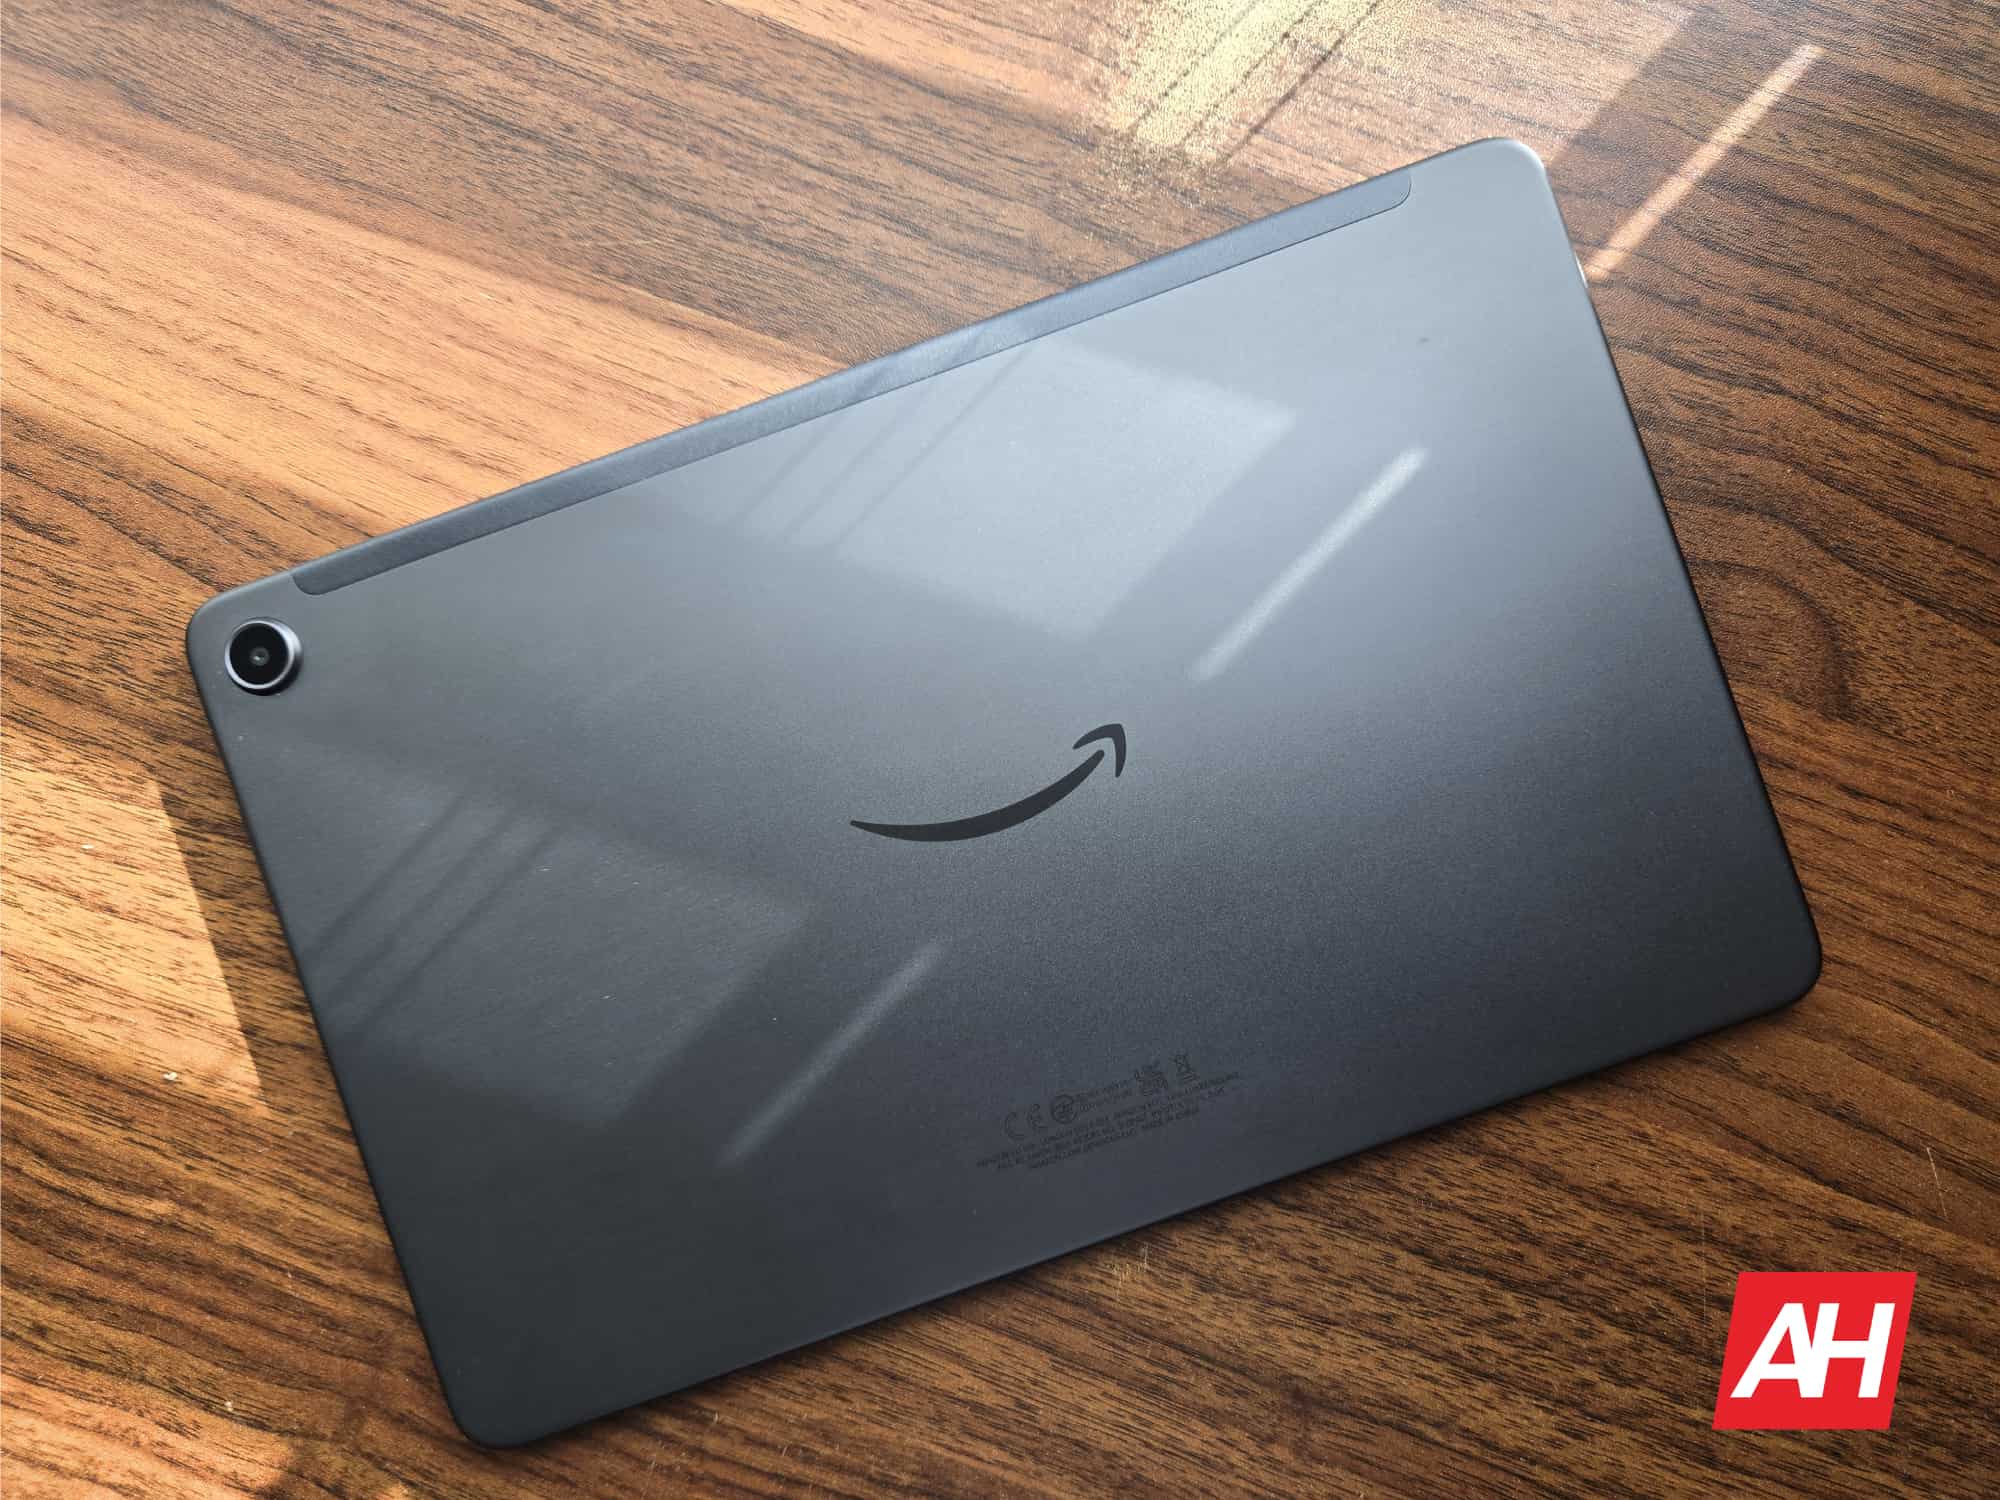 Compra la tableta Fire Max 11 de Amazon por solo $ 200